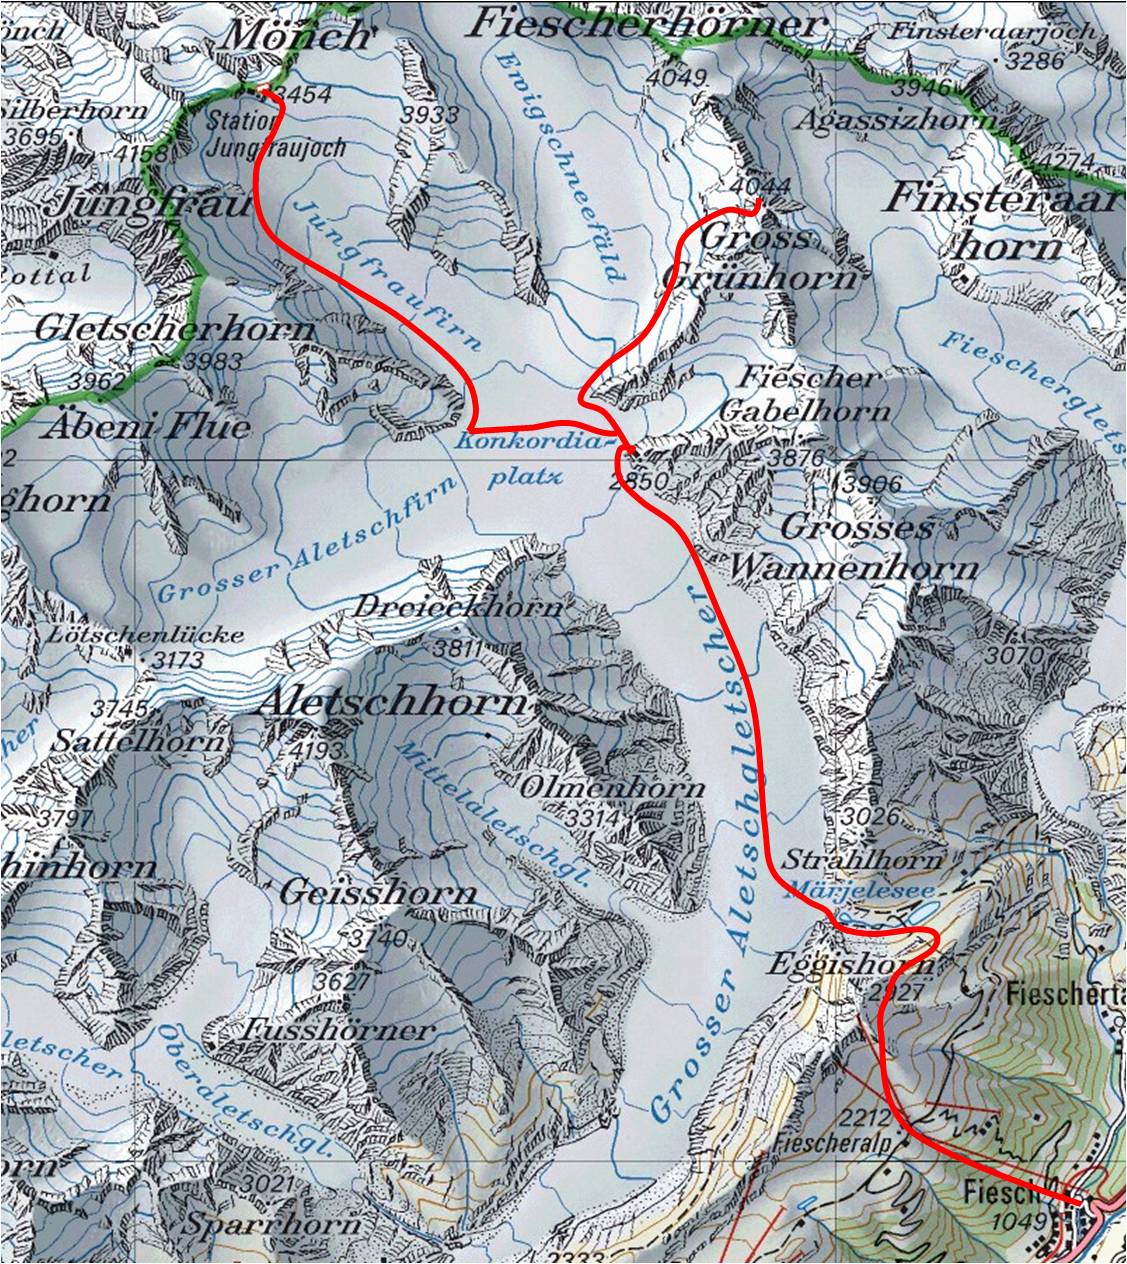 Gross Grünhorn ski tour